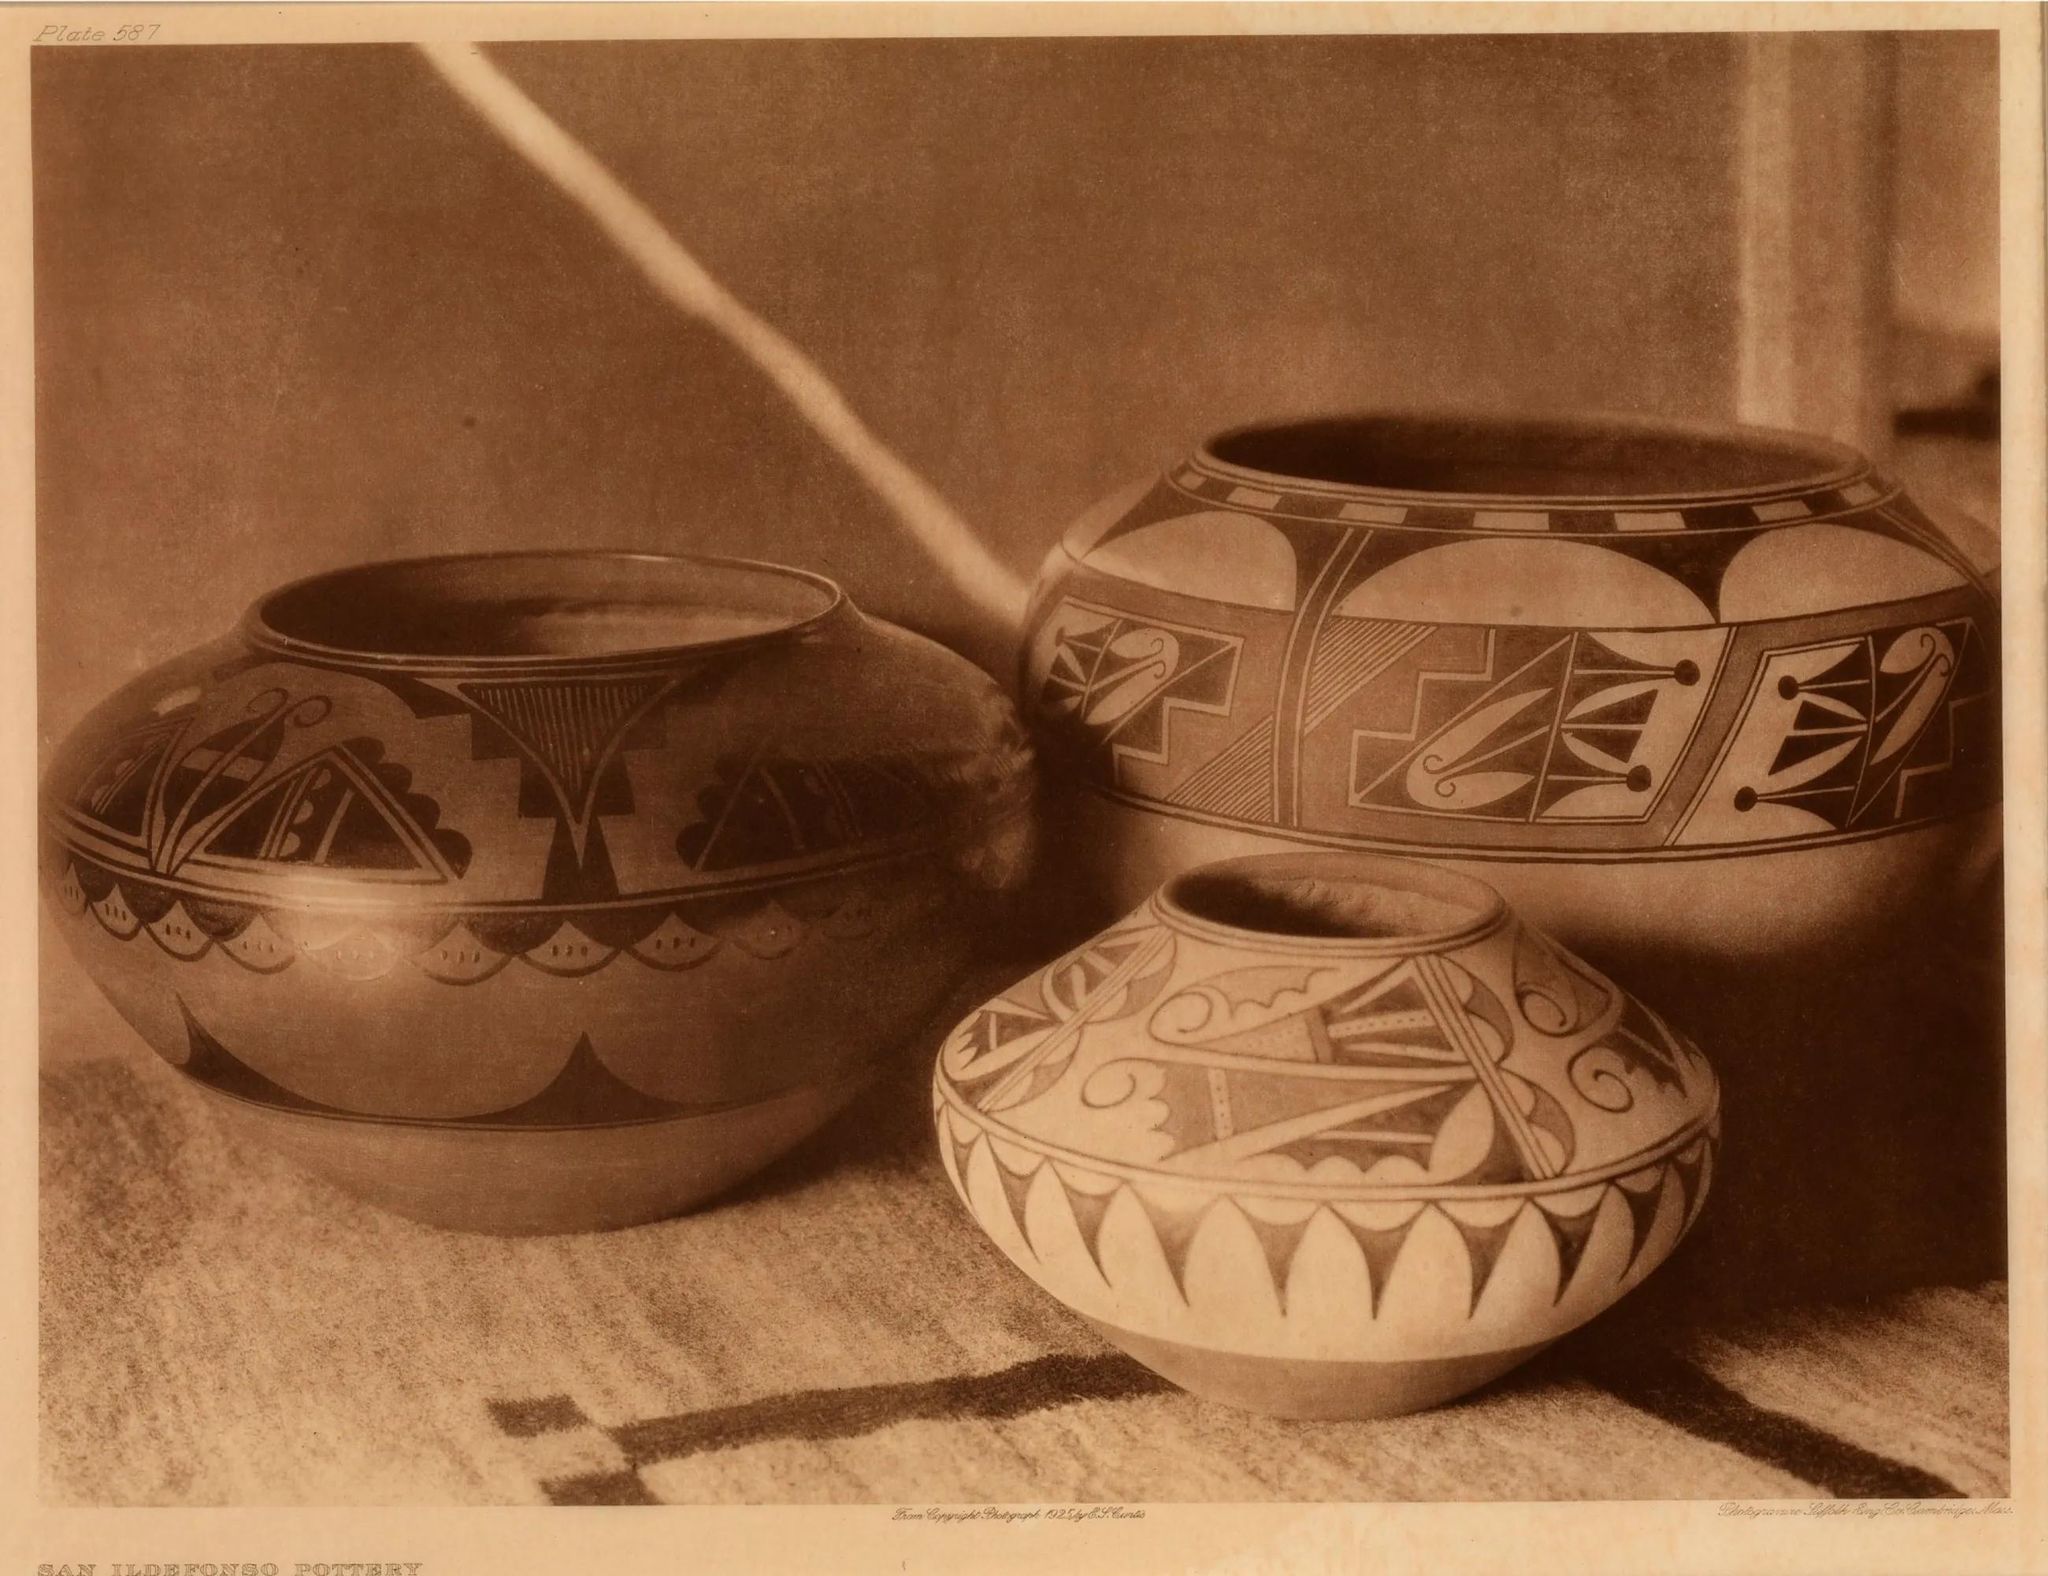 San Ildefonso Pottery